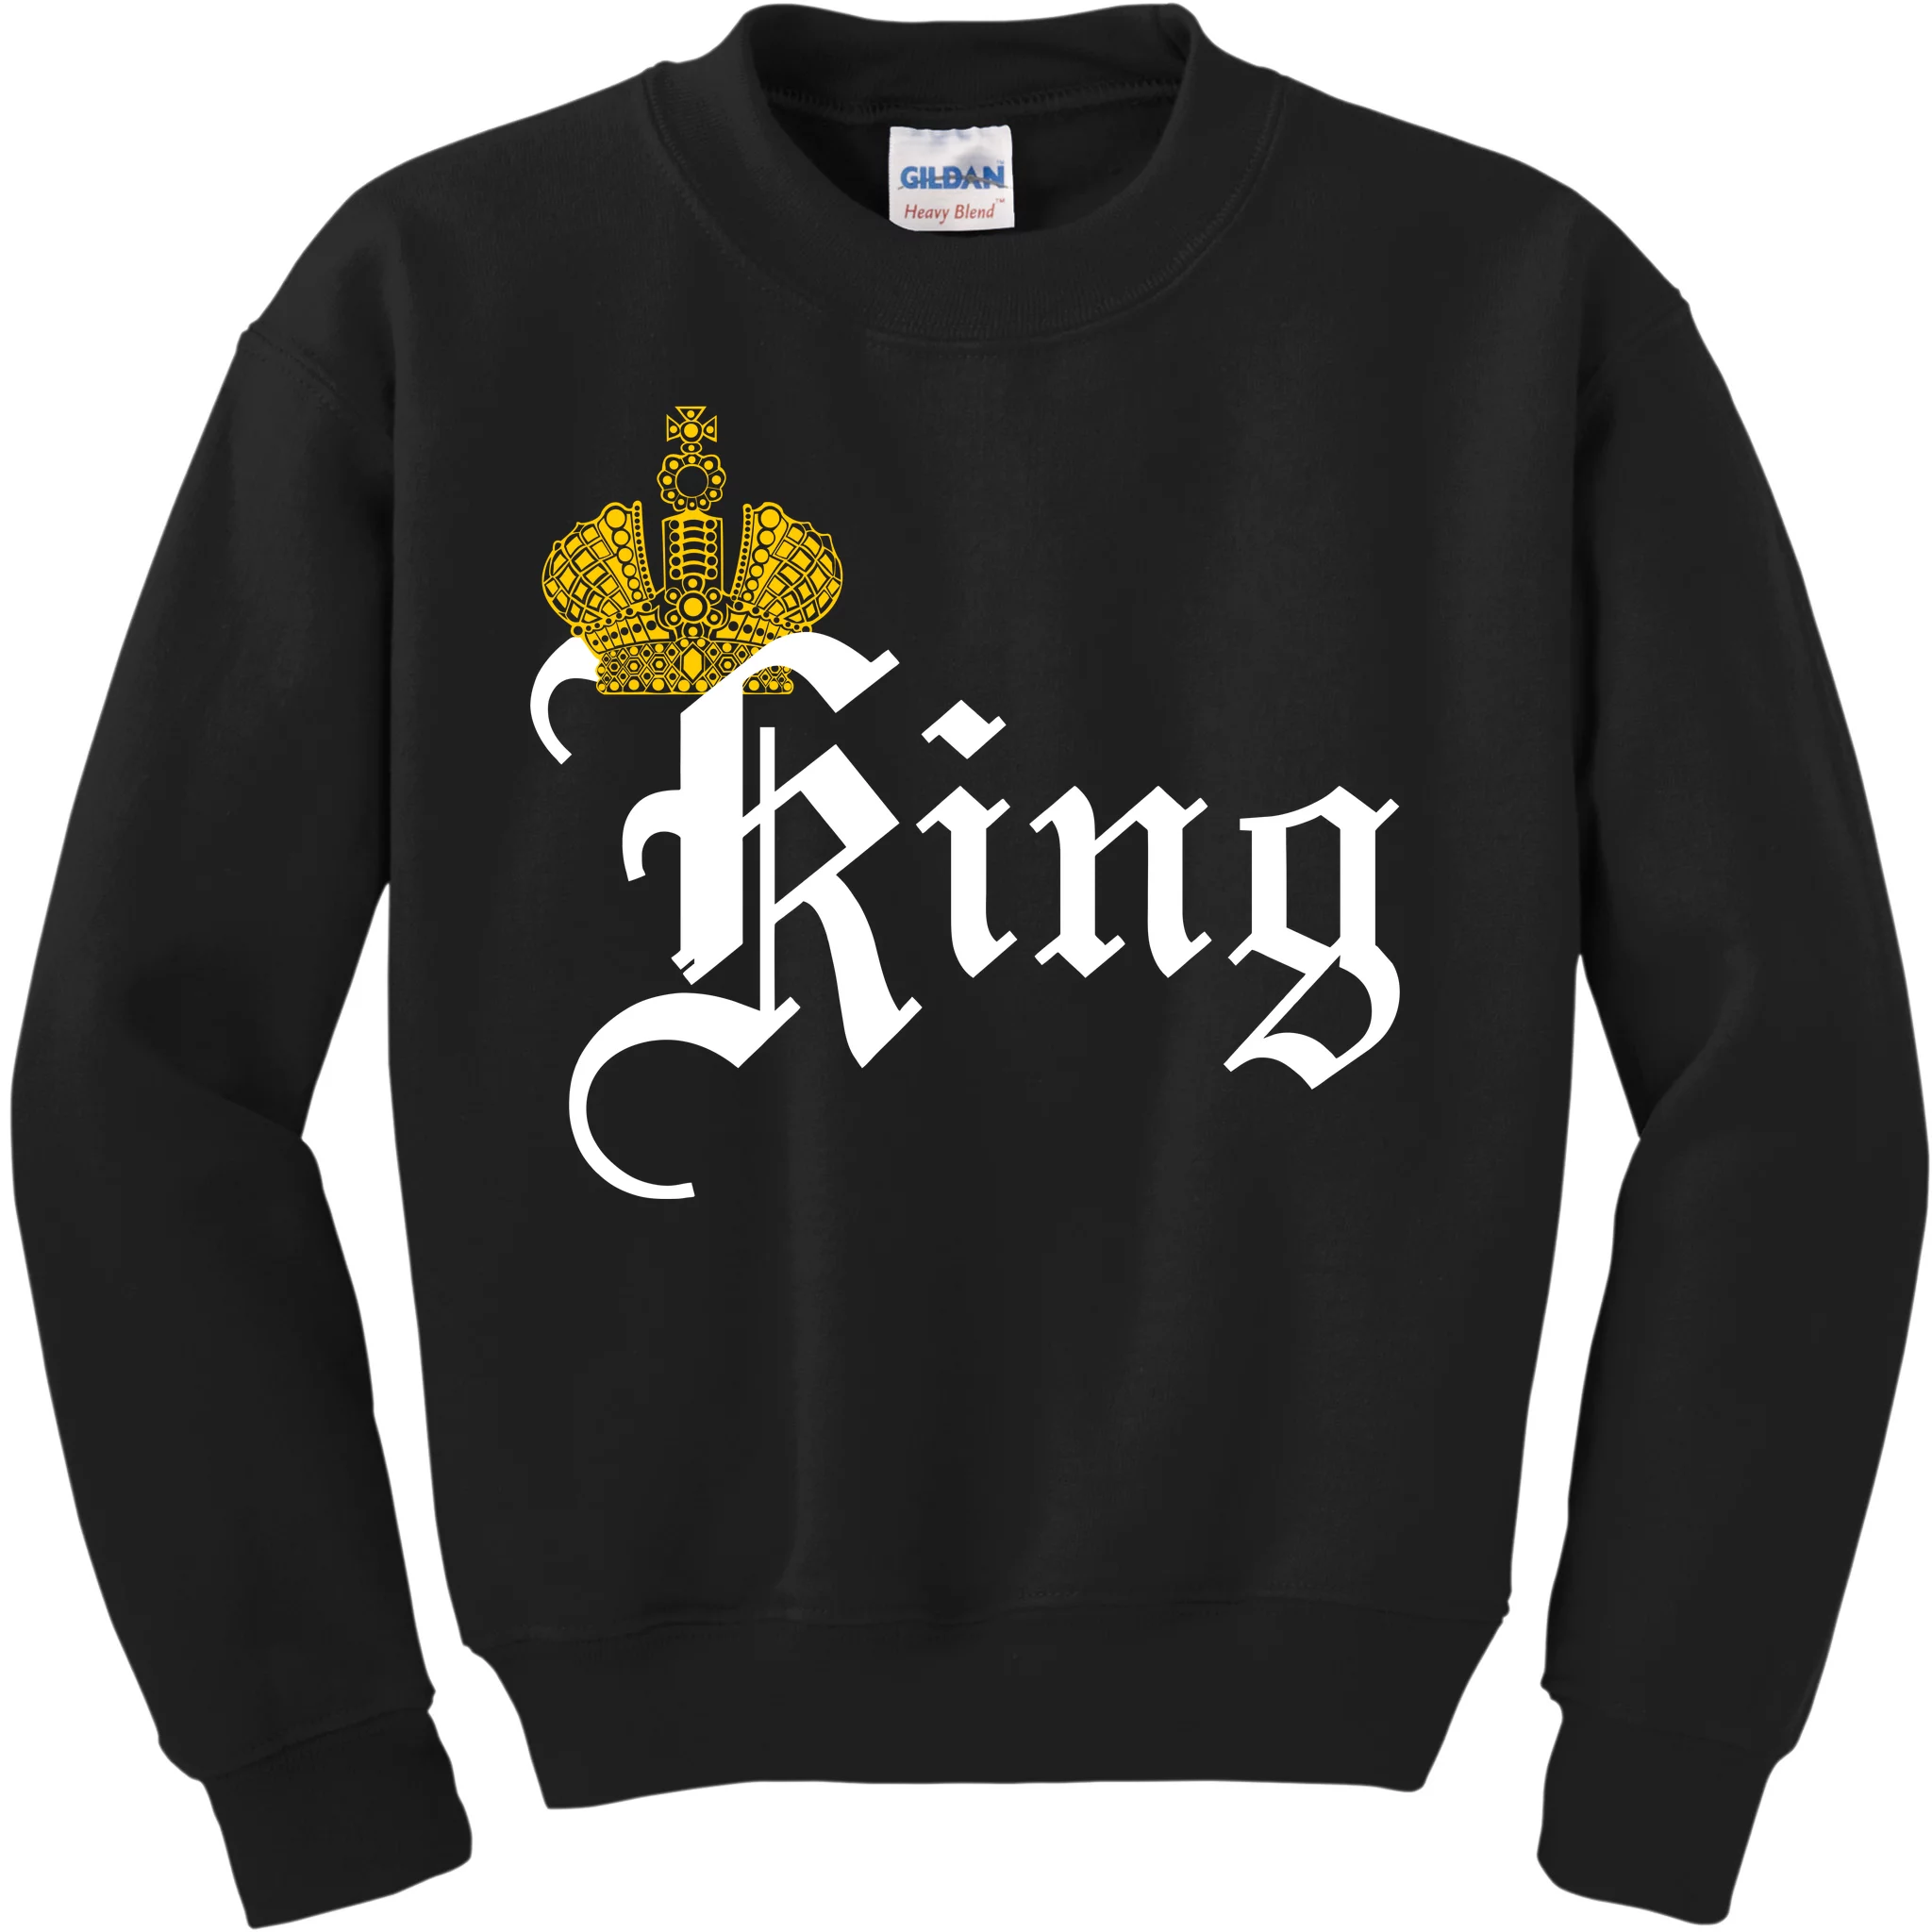 King Crown Old English Logo Kids Sweatshirt